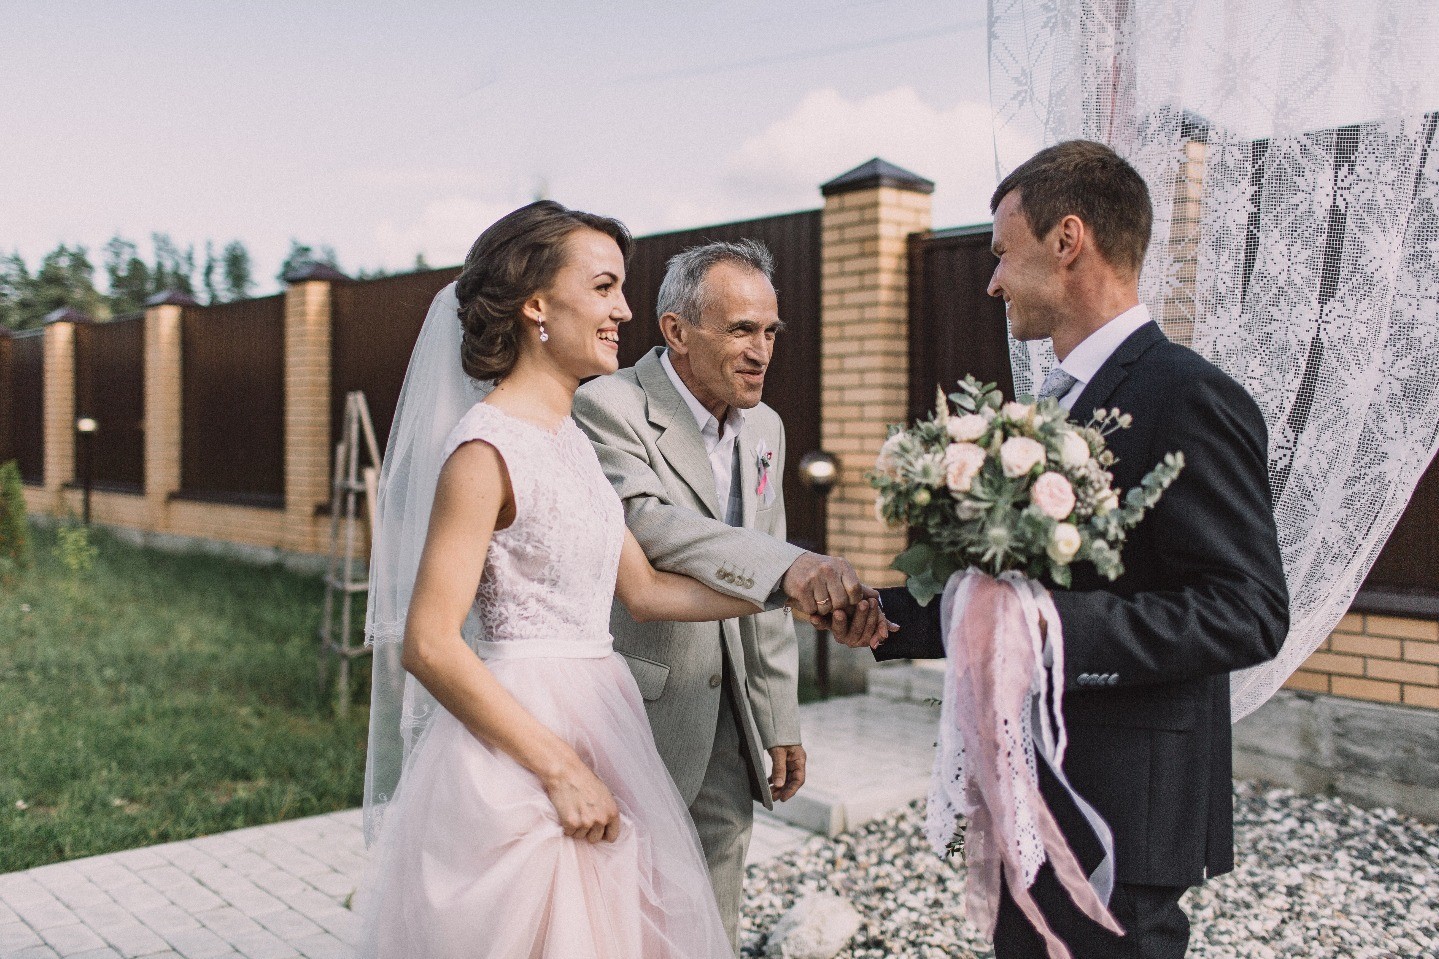 Уютно и по-домашнему: свадьба в стиле рустик